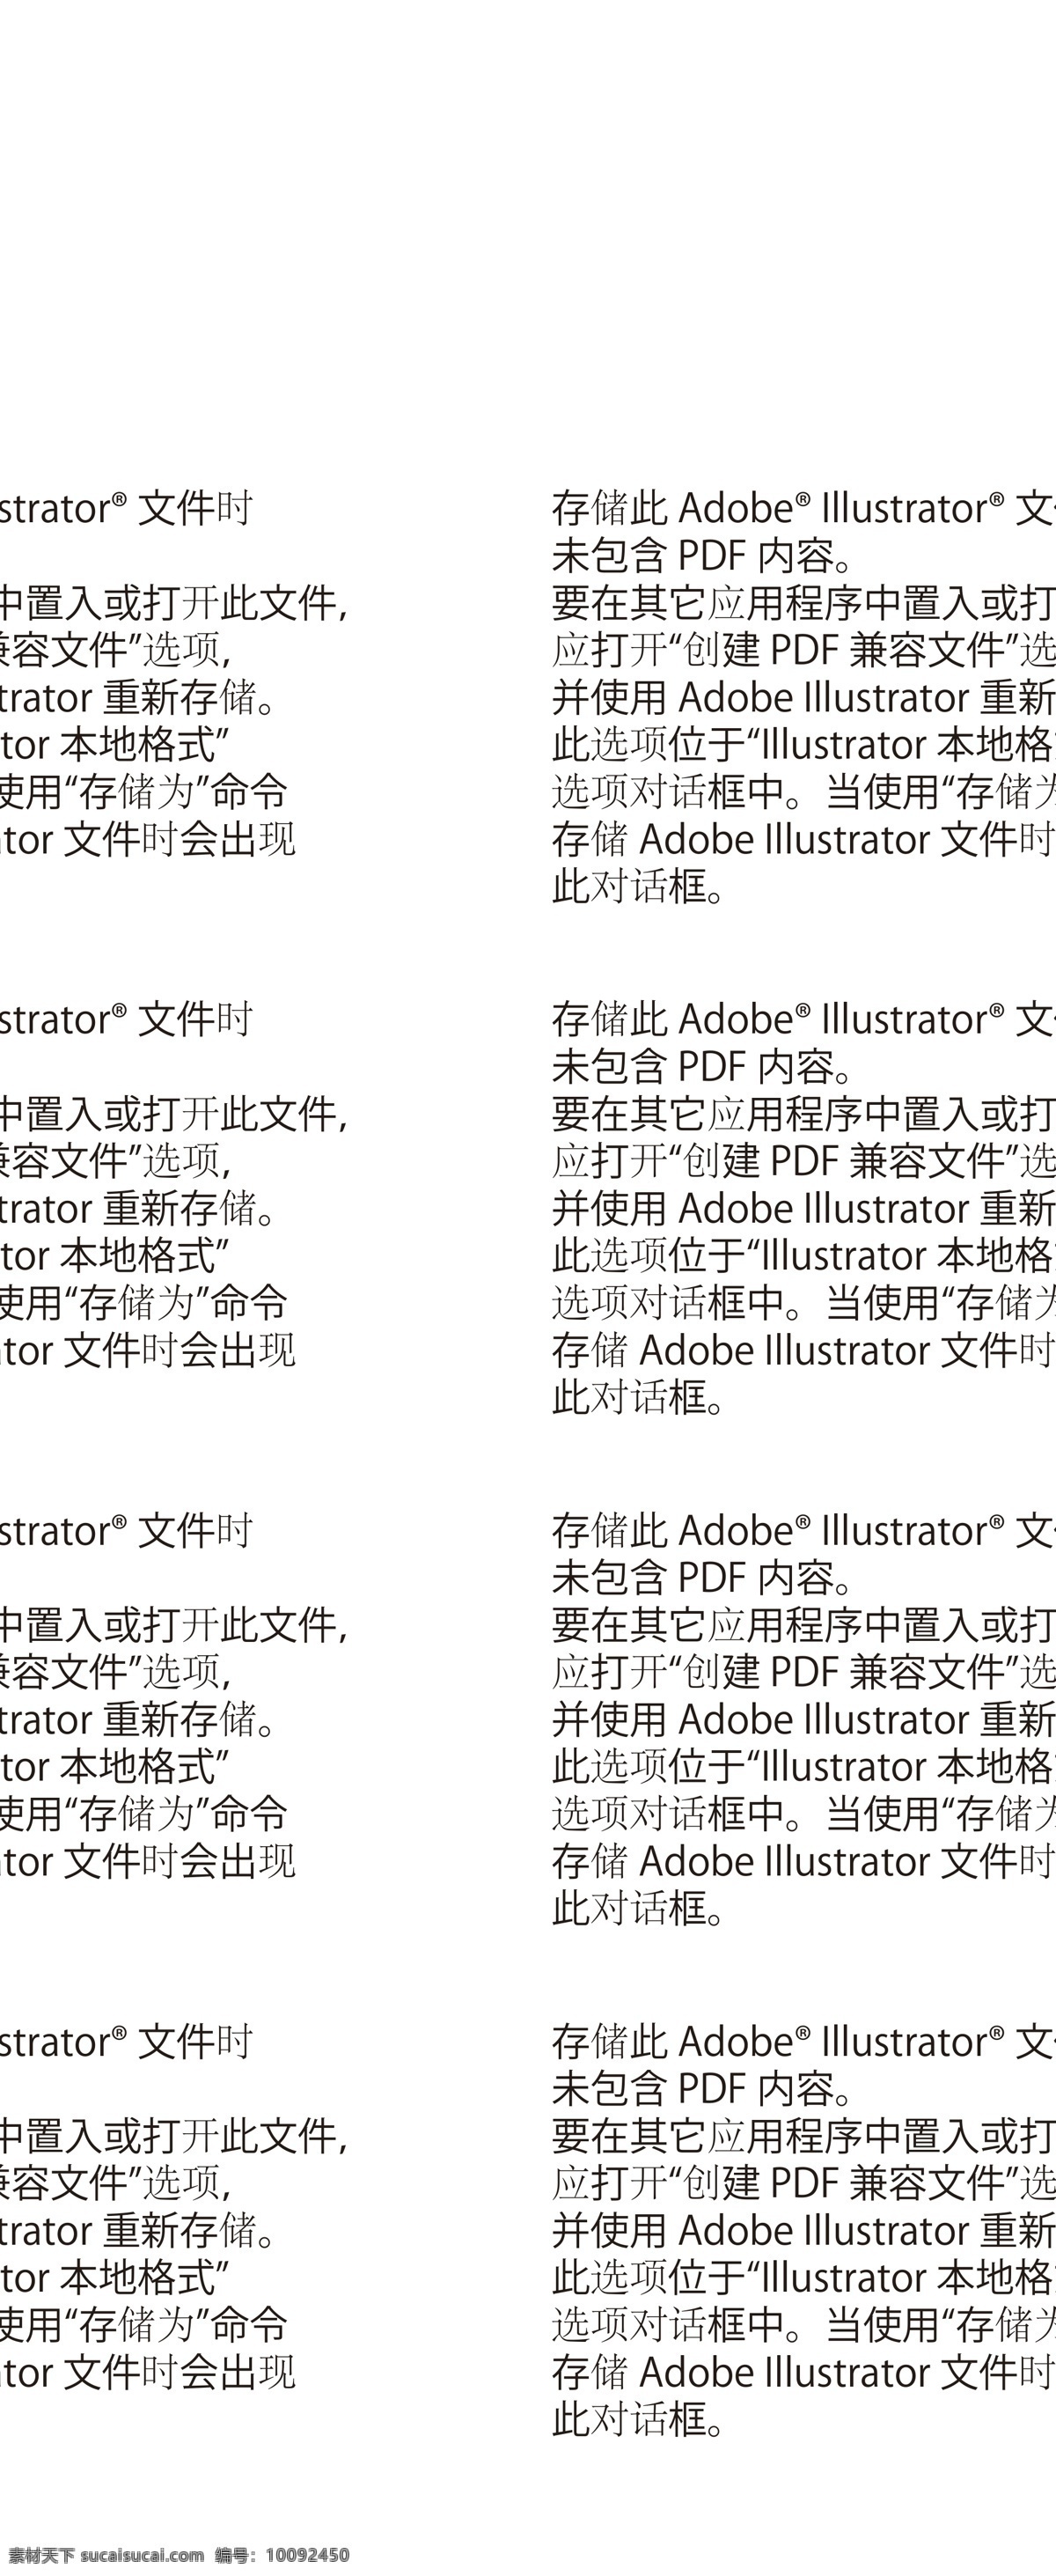 日本 铁锹 标签 高清 版面设计背景 标签图片 广告背景 模板设计 企业 设计素材 设计图 矢量图